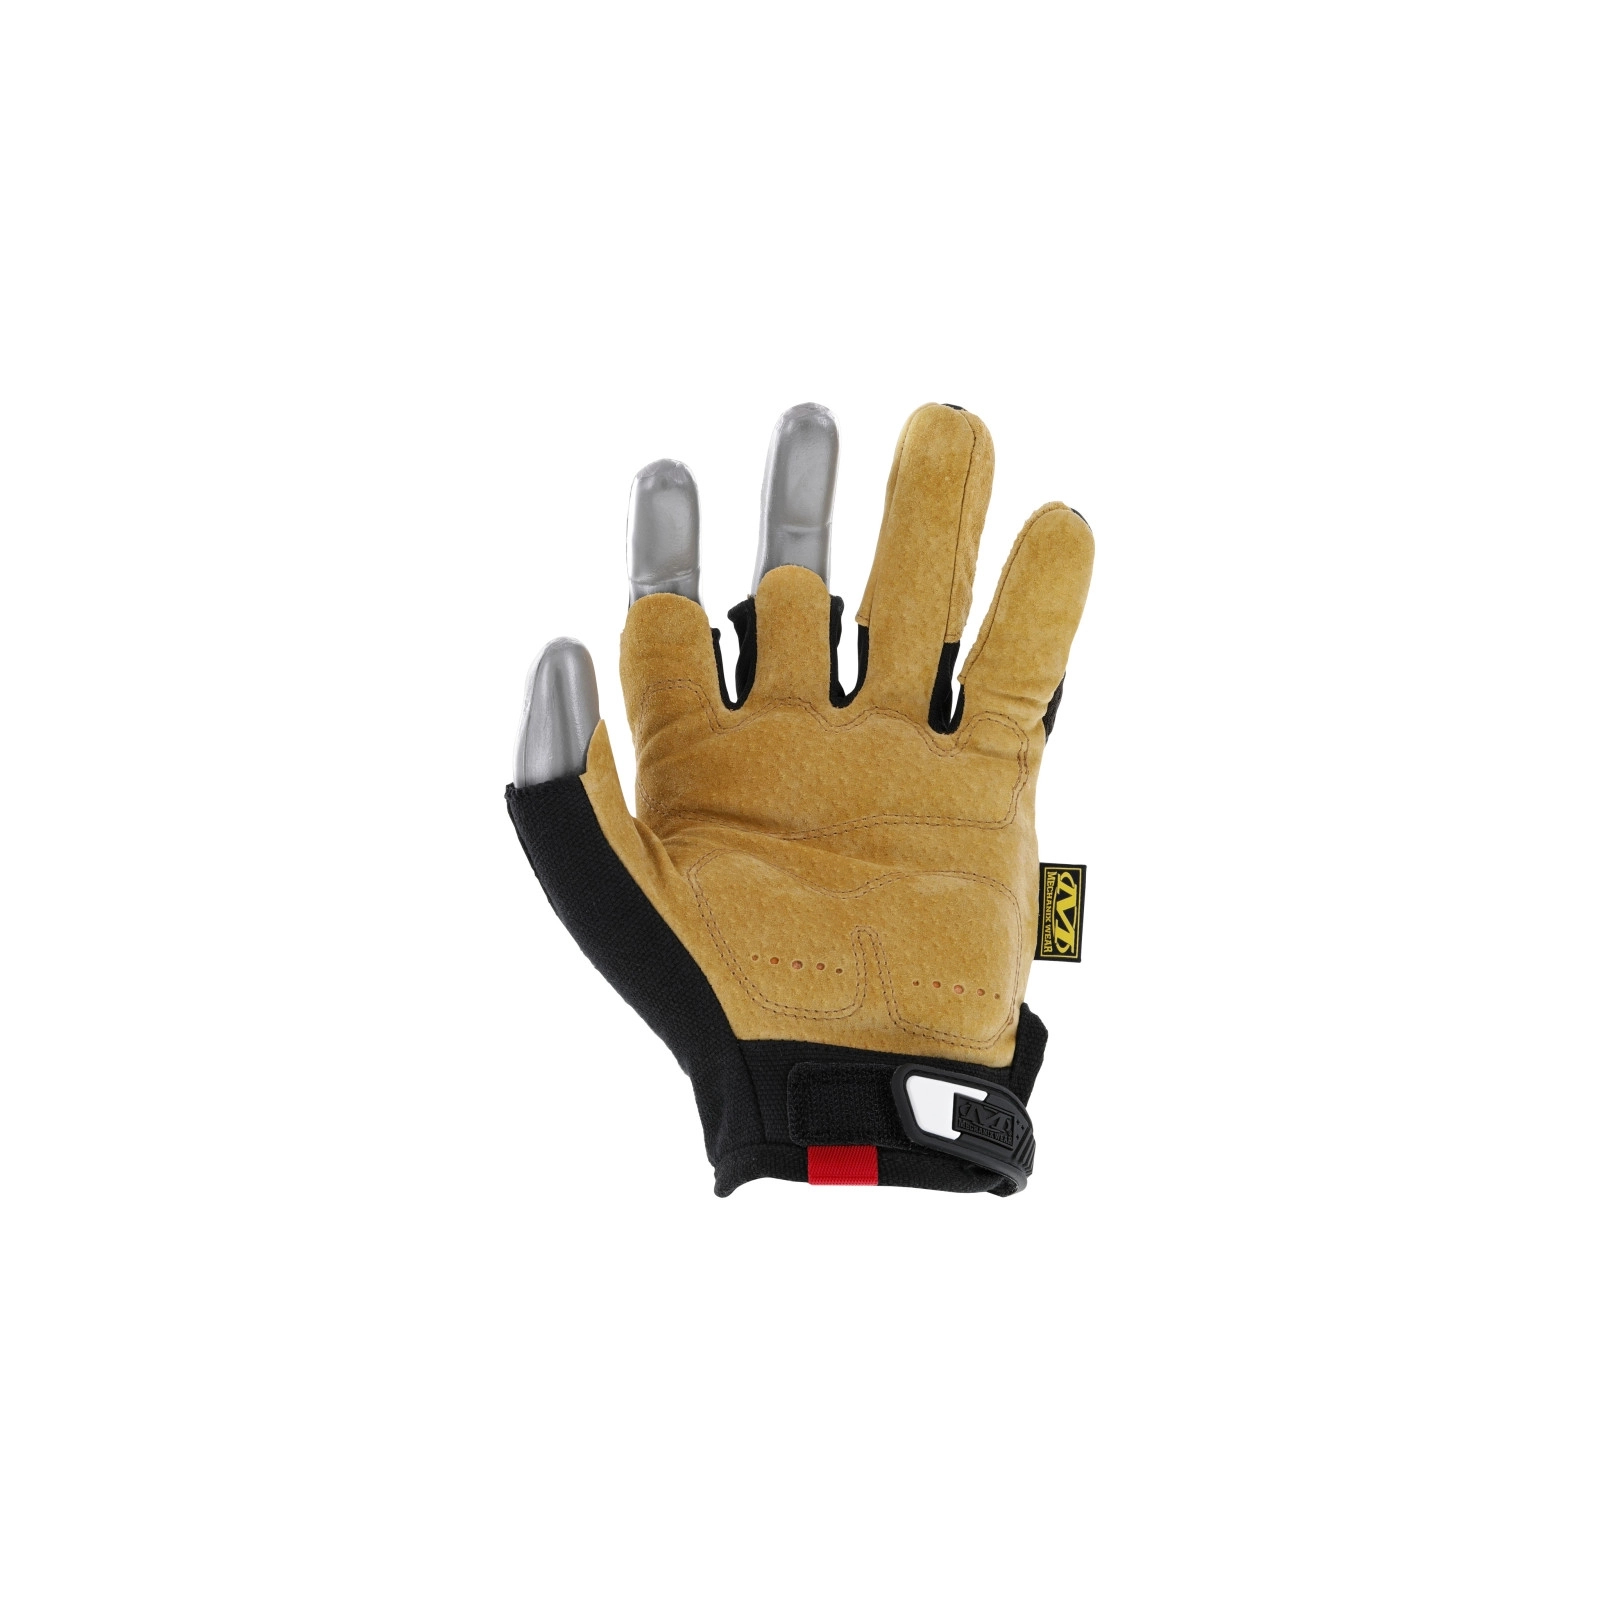 Захисні рукавиці Mechanix M-Pact Framer Leather (LG) (LFR-75-010) зображення 2